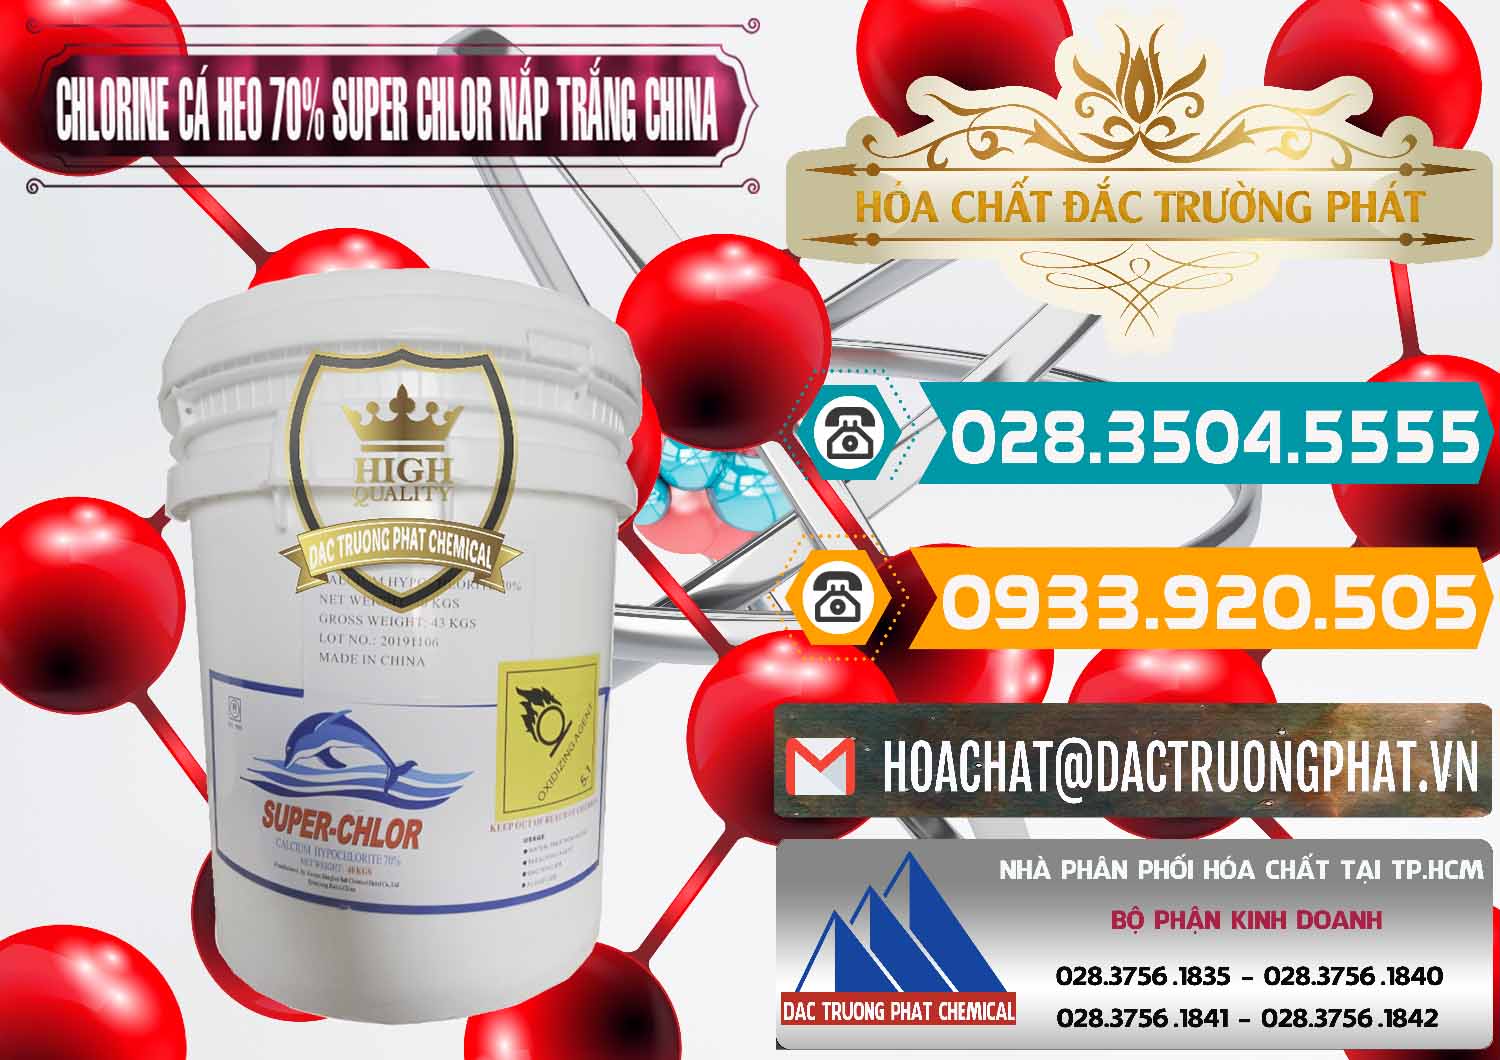 Cty chuyên kinh doanh - bán Clorin - Chlorine Cá Heo 70% Super Chlor Nắp Trắng Trung Quốc China - 0240 - Cty chuyên kinh doanh ( phân phối ) hóa chất tại TP.HCM - congtyhoachat.vn